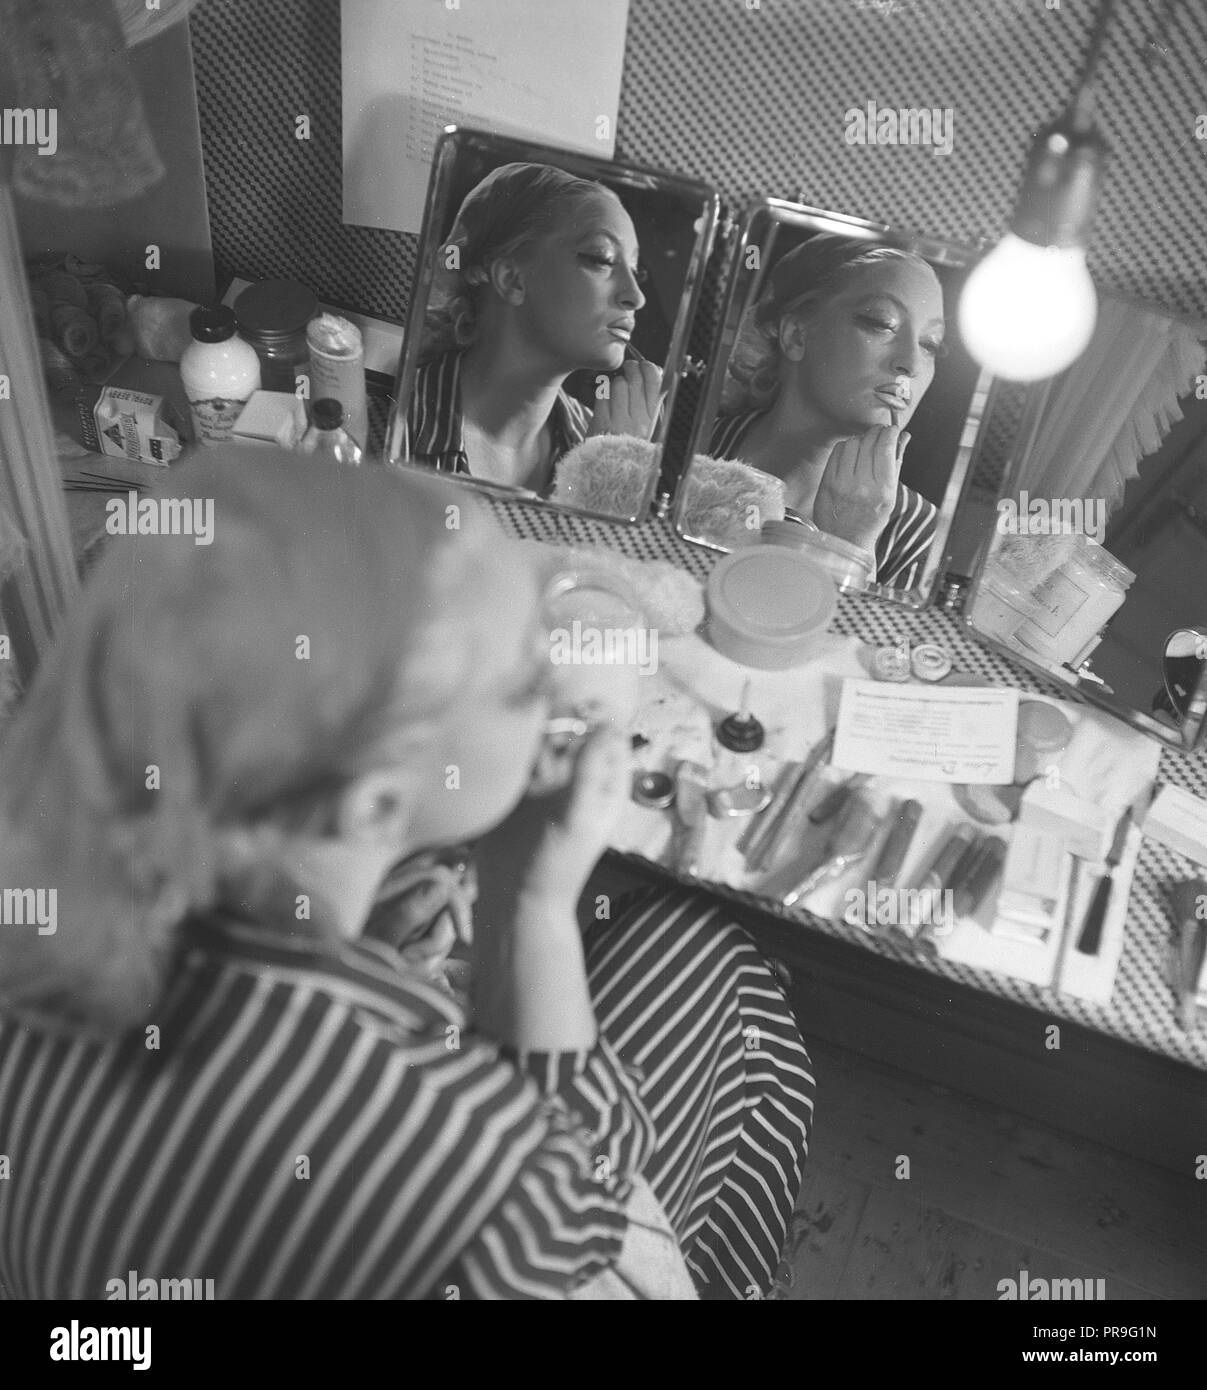 Prodotti cosmetici nel 1940s. Una giovane donna in casa è seduto a un make up desk e guardando se stessa in specchi da angoli diffente pur mettendo su trucco. Ci sono molti tipi differenti di cosmectics giacente sul tavolo di fronte a lei. La Svezia 1944. Foto Kristoffersson AB3-8 Foto Stock